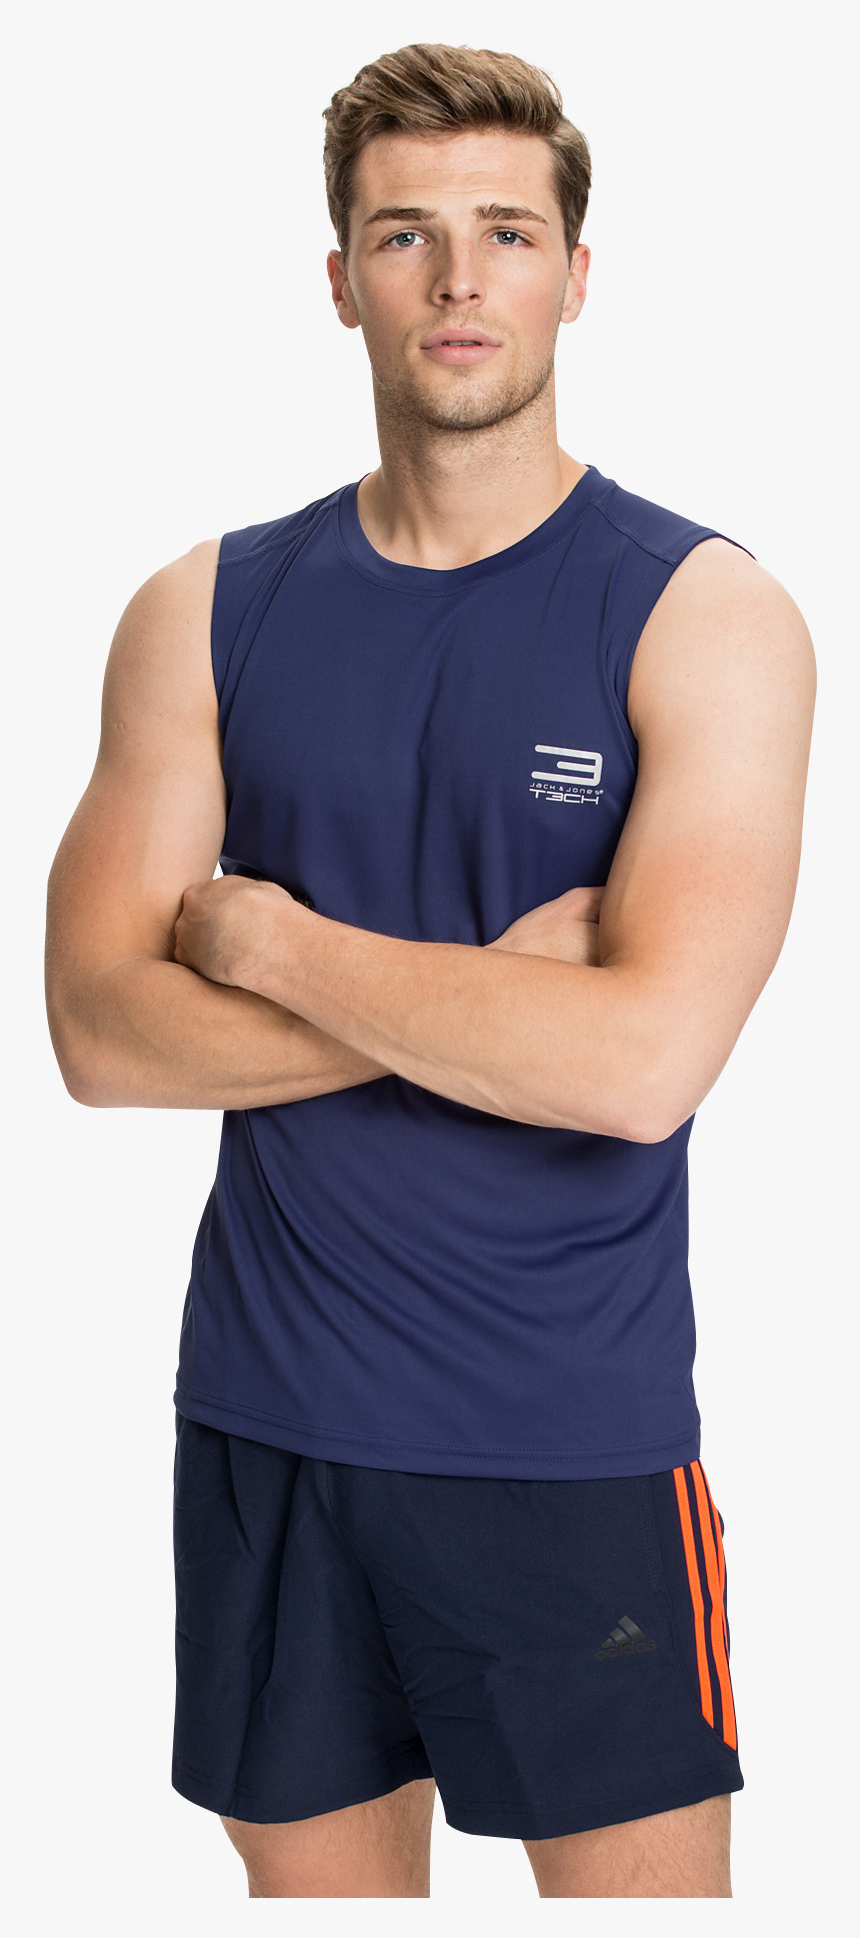 Men Fitness Png Transparent Image - Man Hd Model Png Transparent, Png Download, Free Download